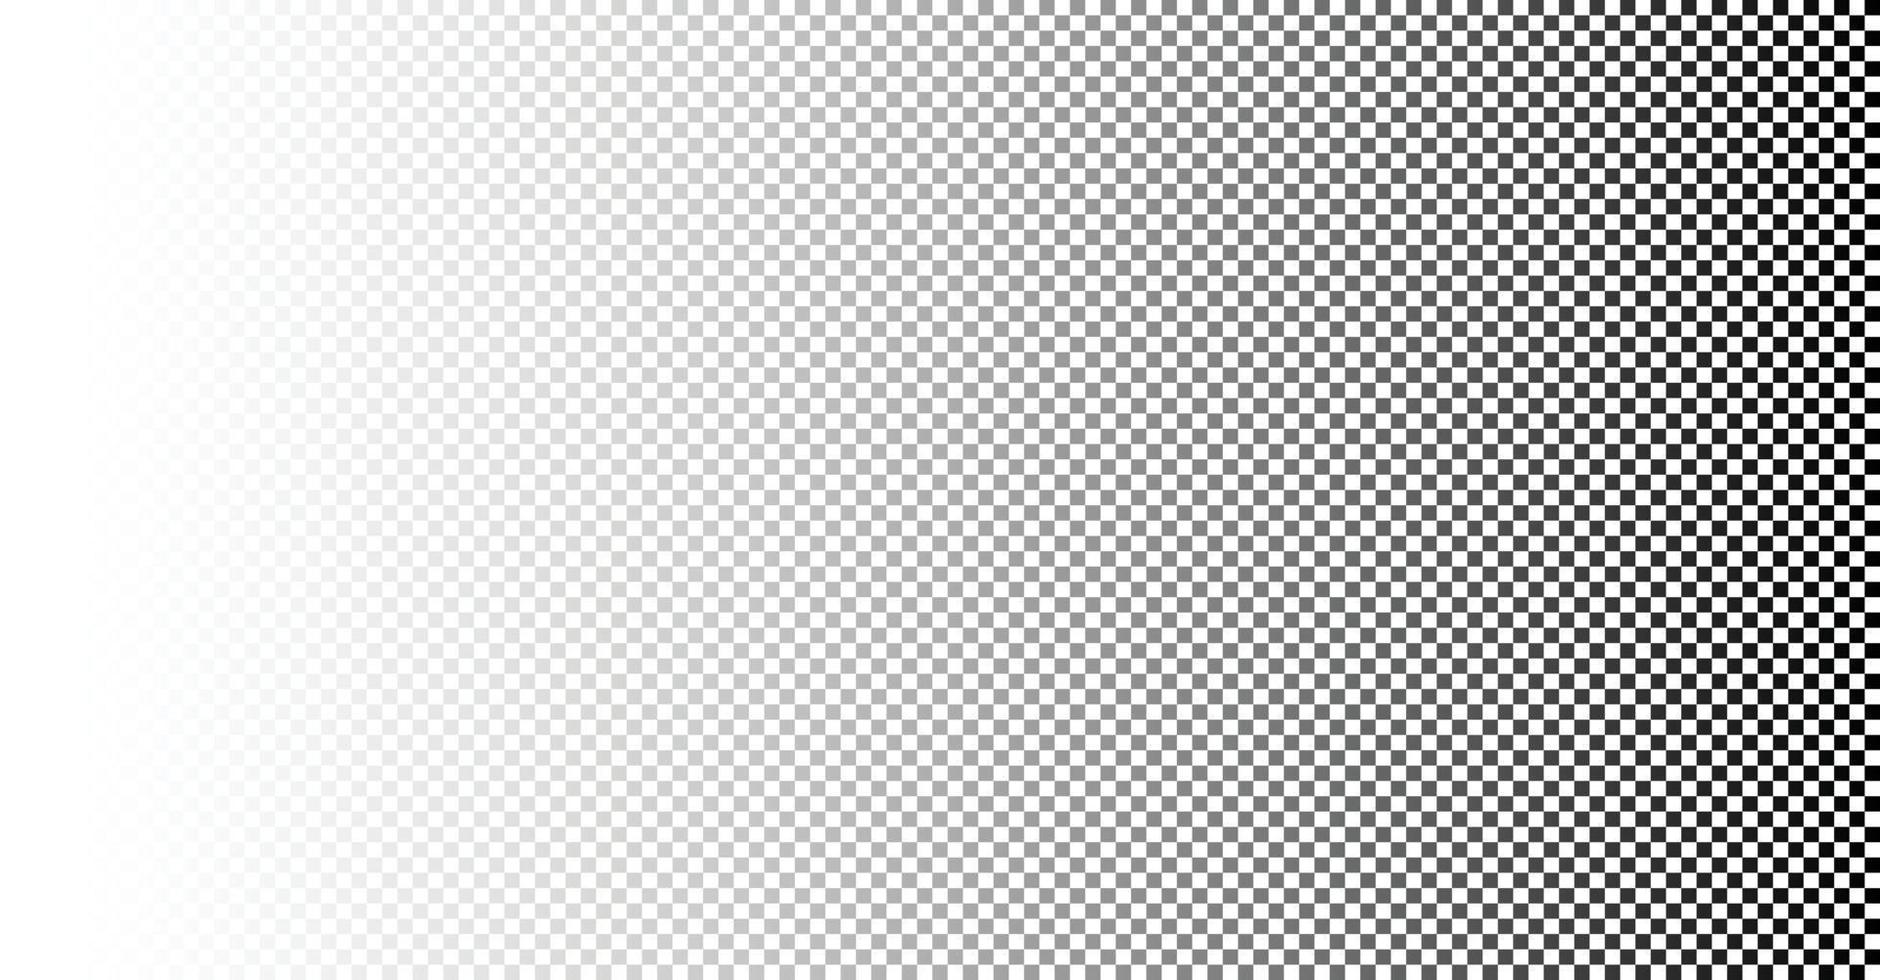 abstraktes weißes geometrisches Muster mit Quadraten. Design-Business-Element für Texturhintergrund, Poster, Karten, Tapeten, Kulissen, Paneele - Vektorillustration vektor